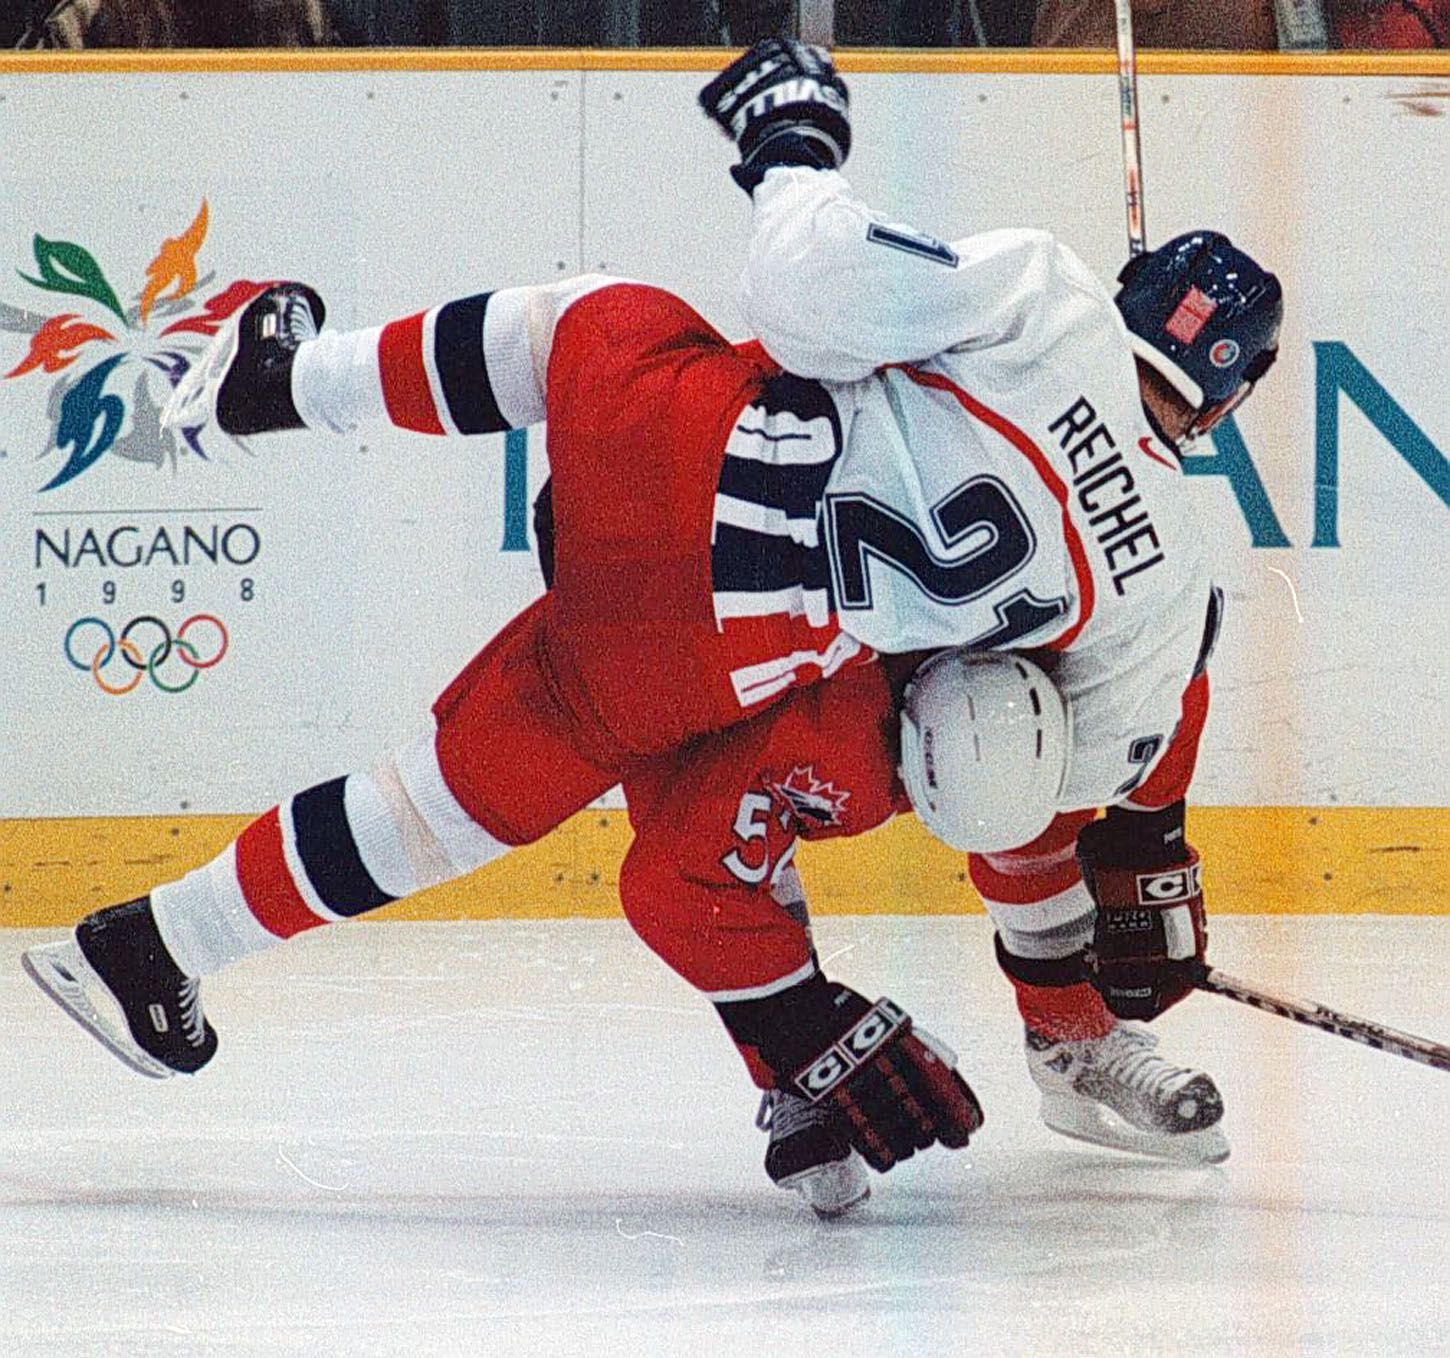 Archivní snímky z ZOH Nagano 1998 - hokej. Robert Reichel